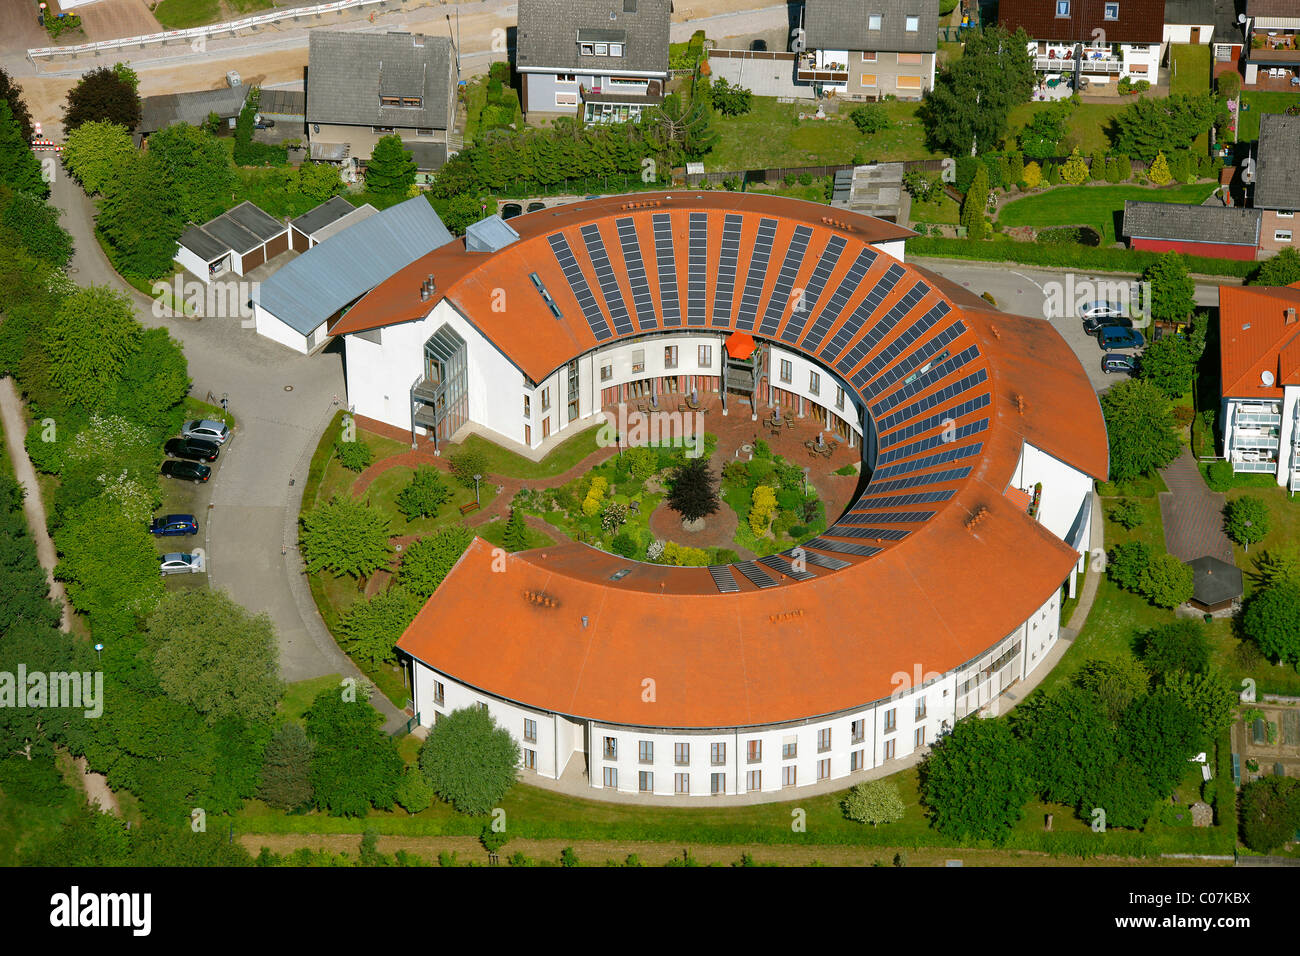 Luftbild, Dach mit Sonnenkollektoren, Rotunde, Alt-Oer Altersheim, Oer-Erkenschwick, Ruhrgebiet, Nordrhein-Westfalen Stockfoto